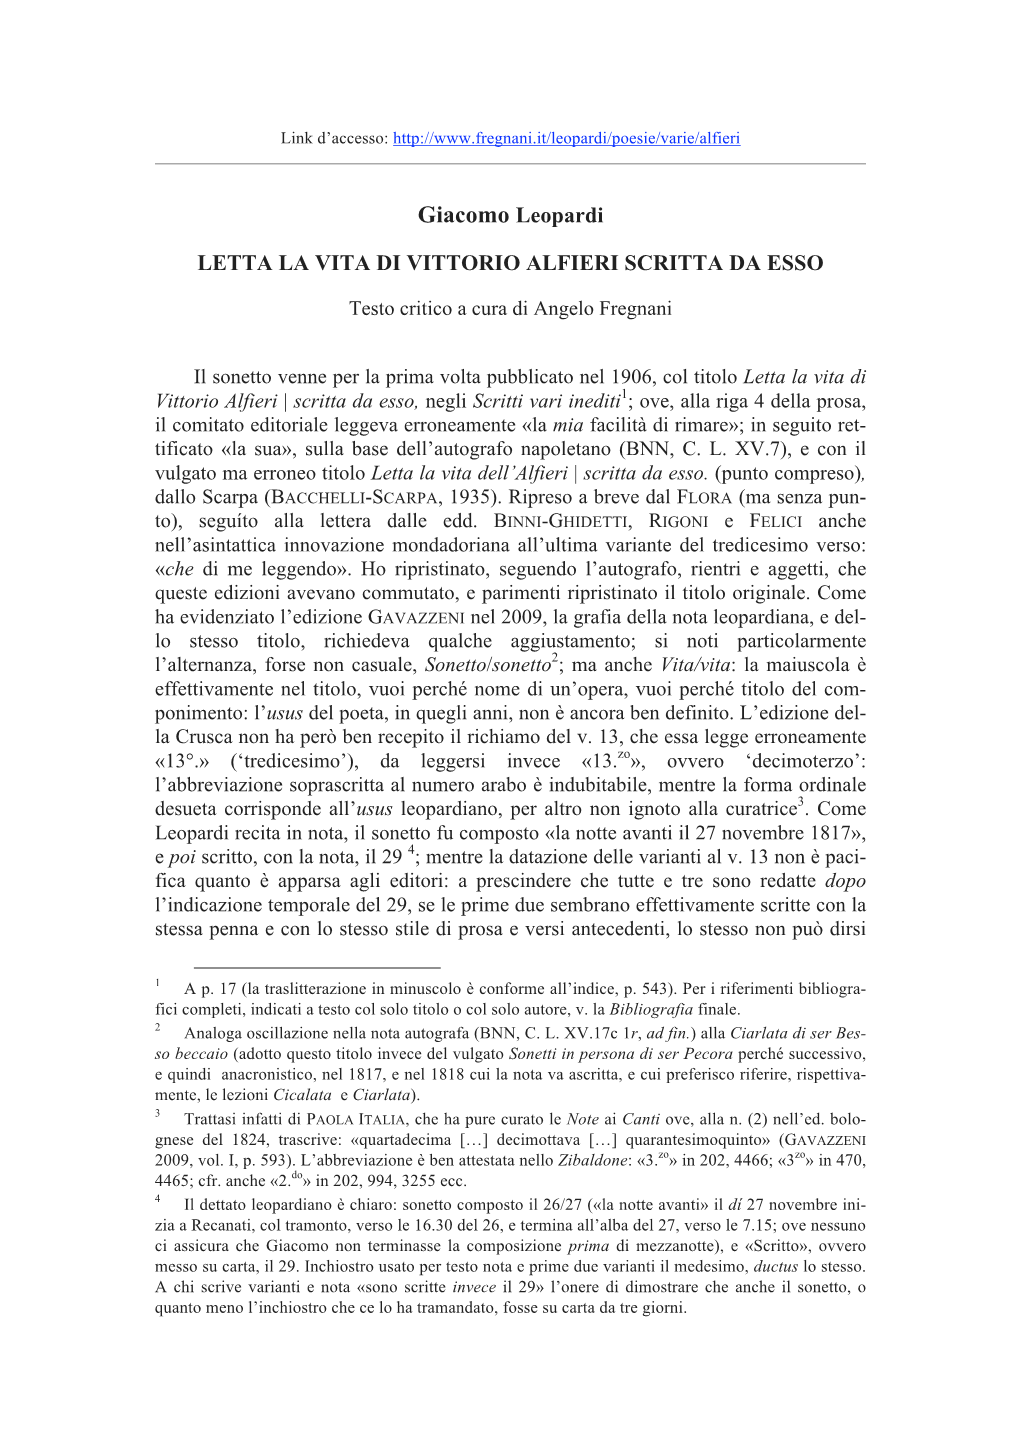 Letta La Vita Di Vittorio Alfieri Scritta Da Esso